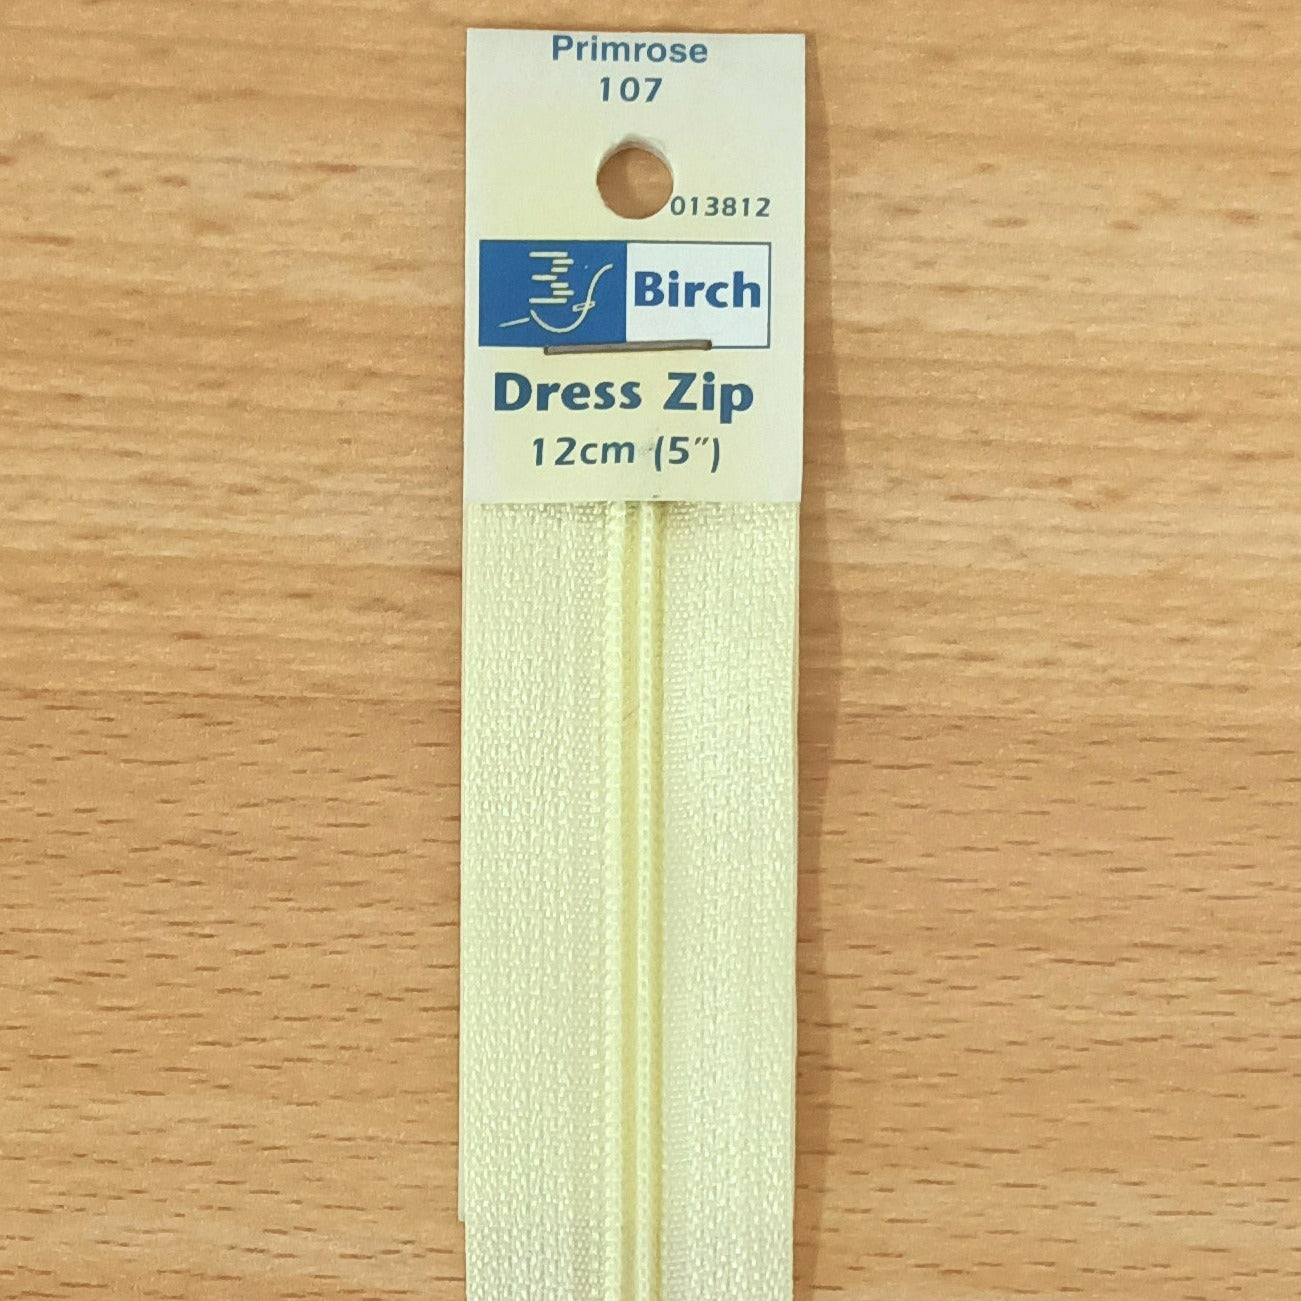 Dress Zip 30cm (12")